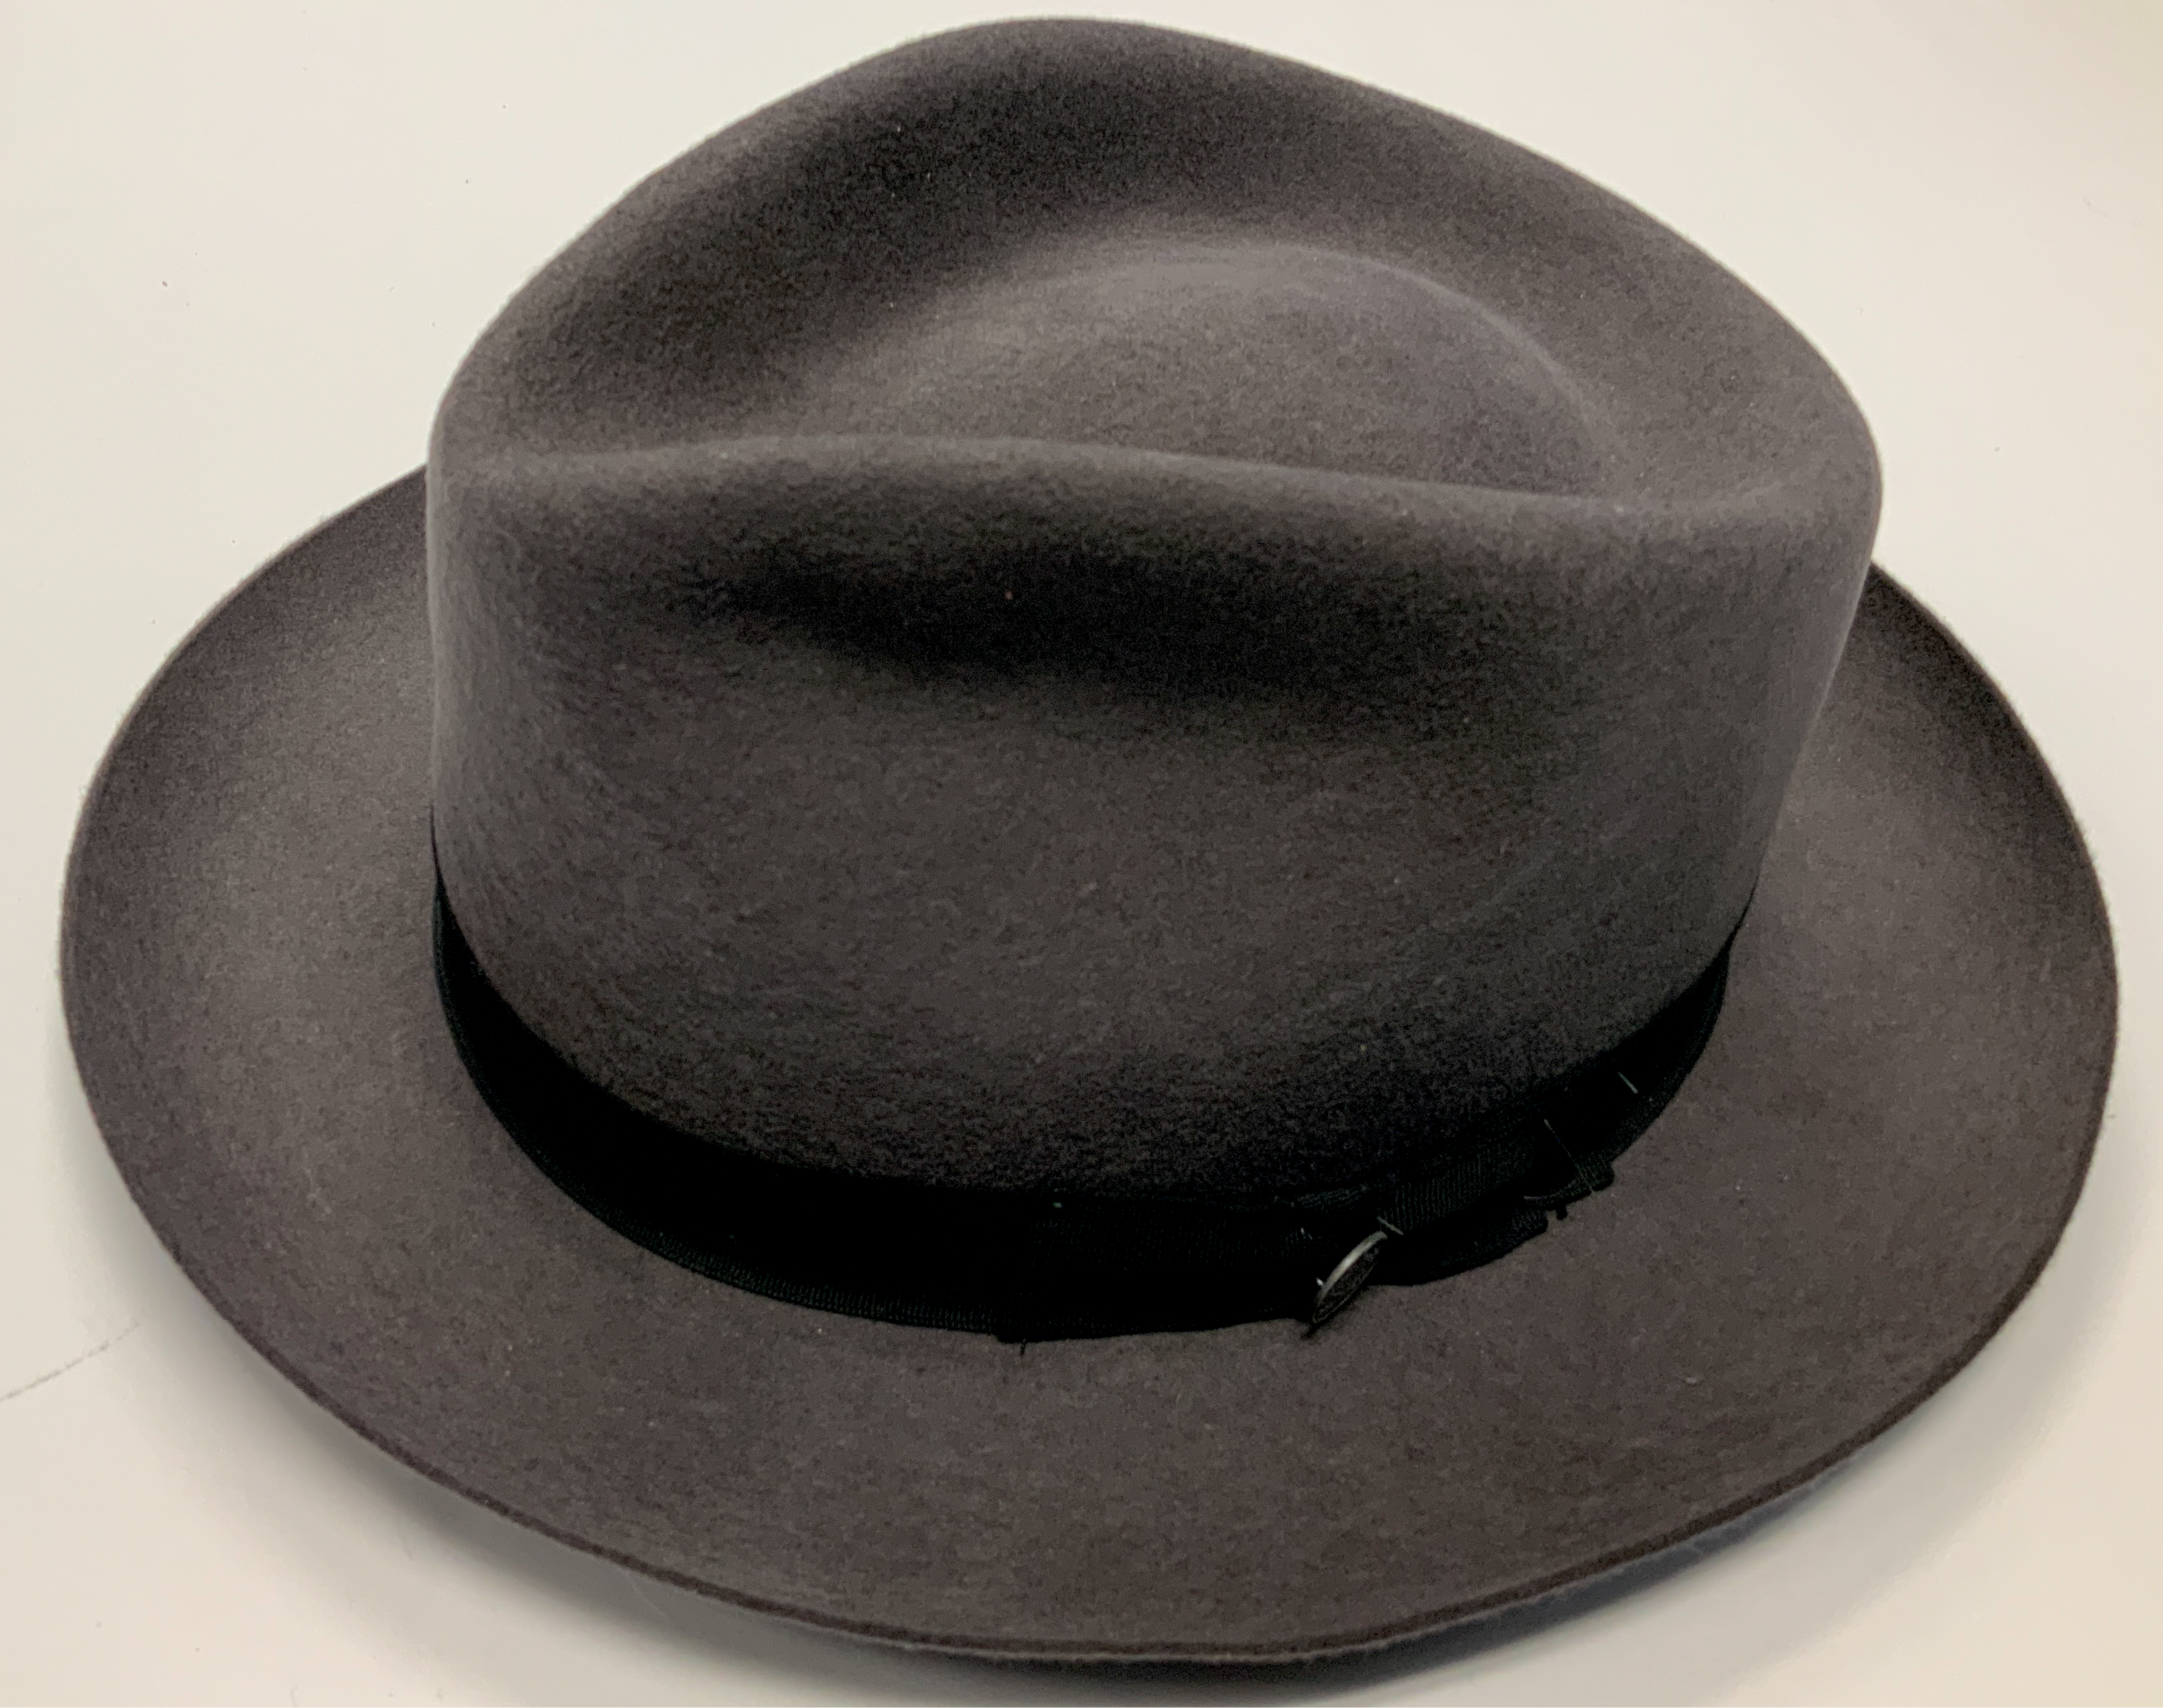 Stetson Chatham Wool Hats